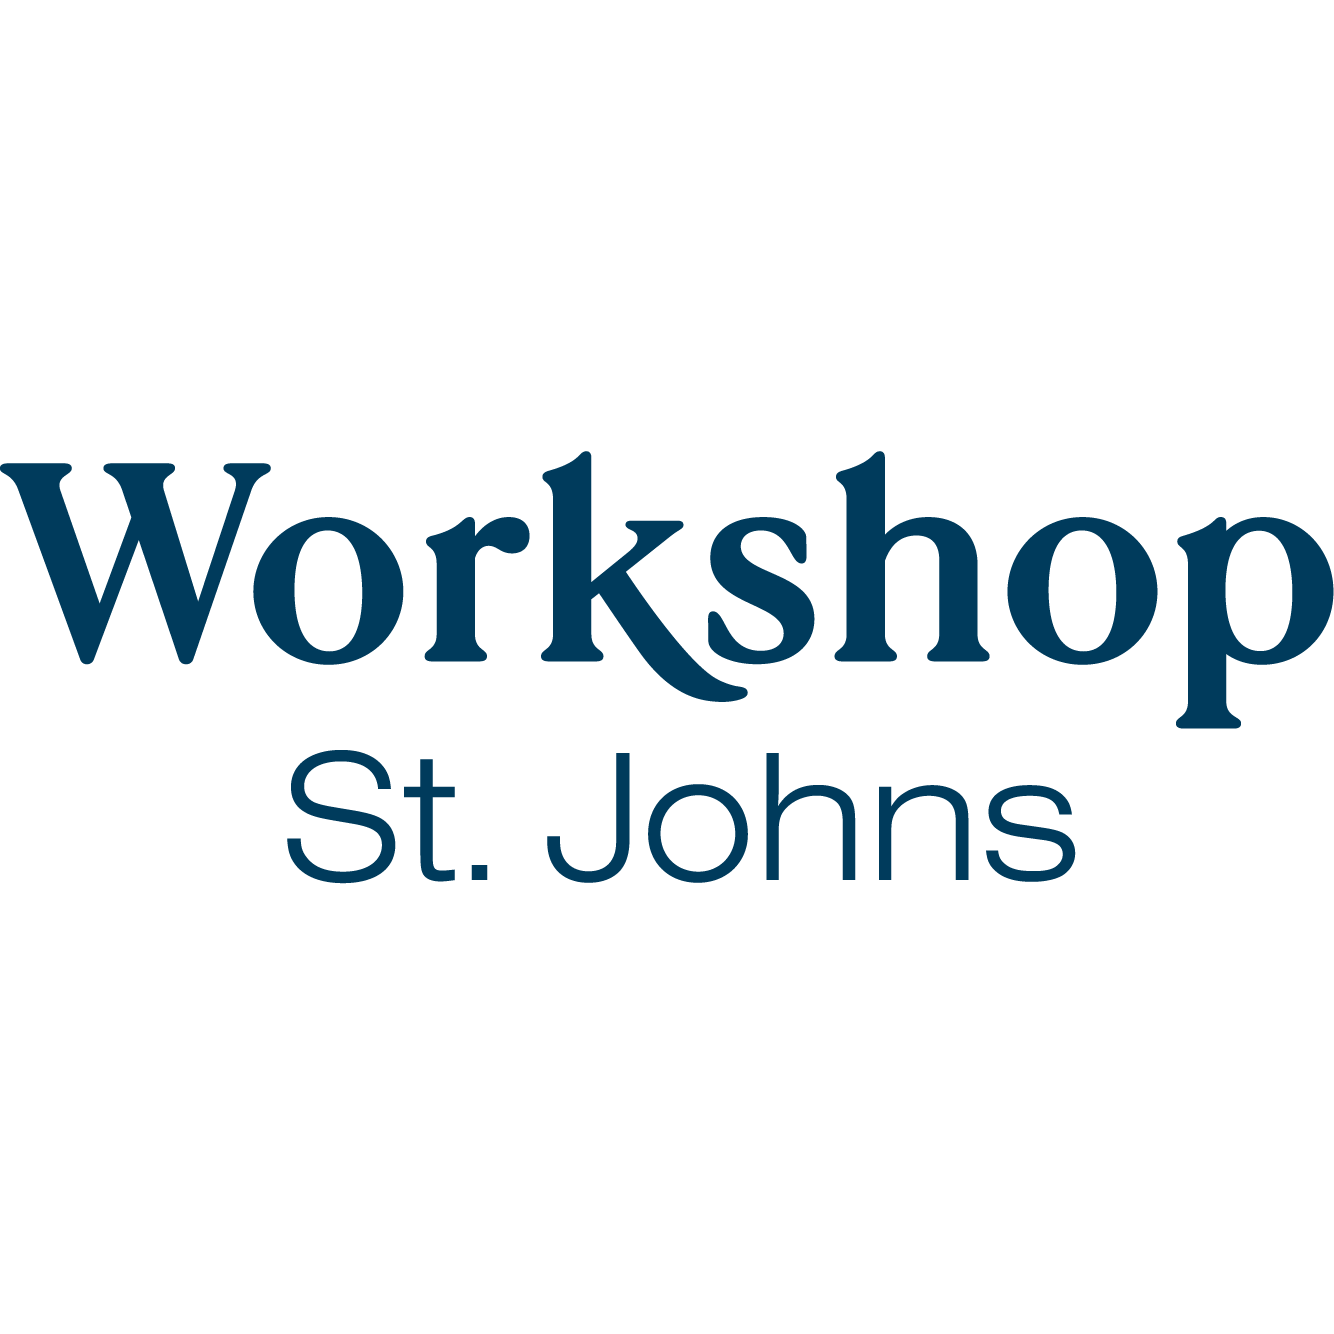 Workshop St. Johns